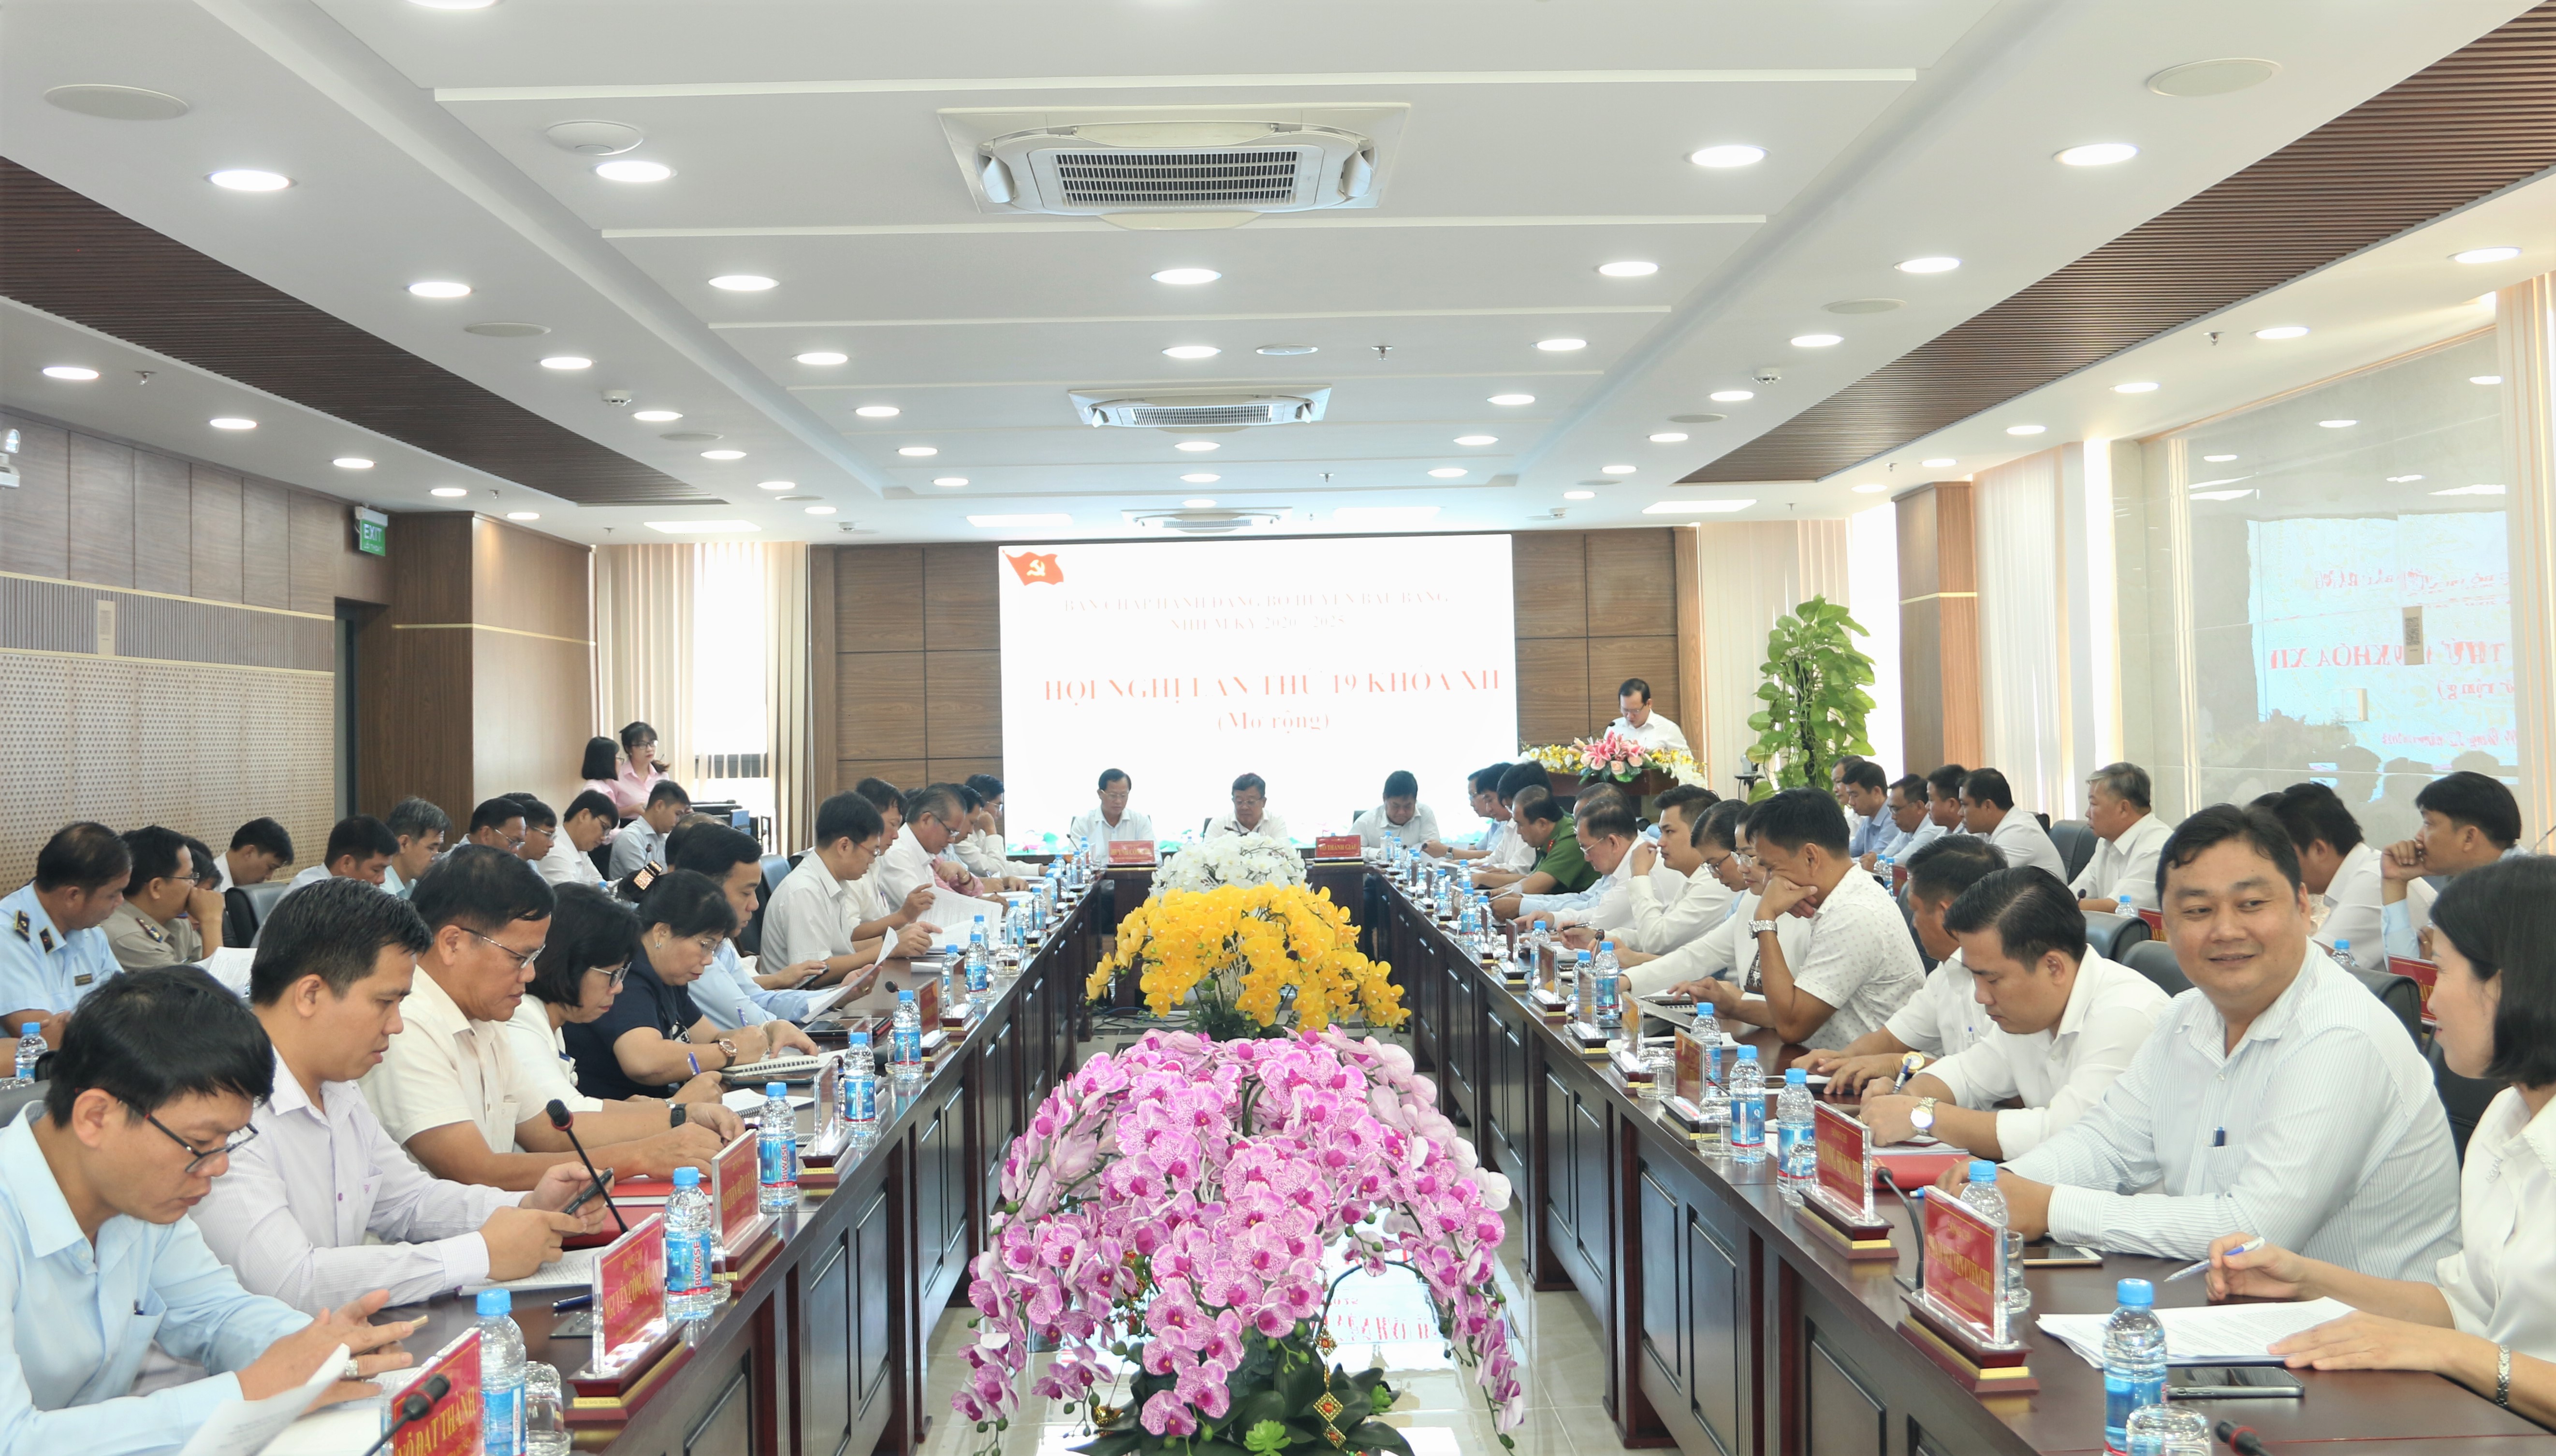 Hội nghị Ban Chấp hành Đảng bộ huyện Bàu Bàng lần thứ 19 - khoá XII (mở rộng)